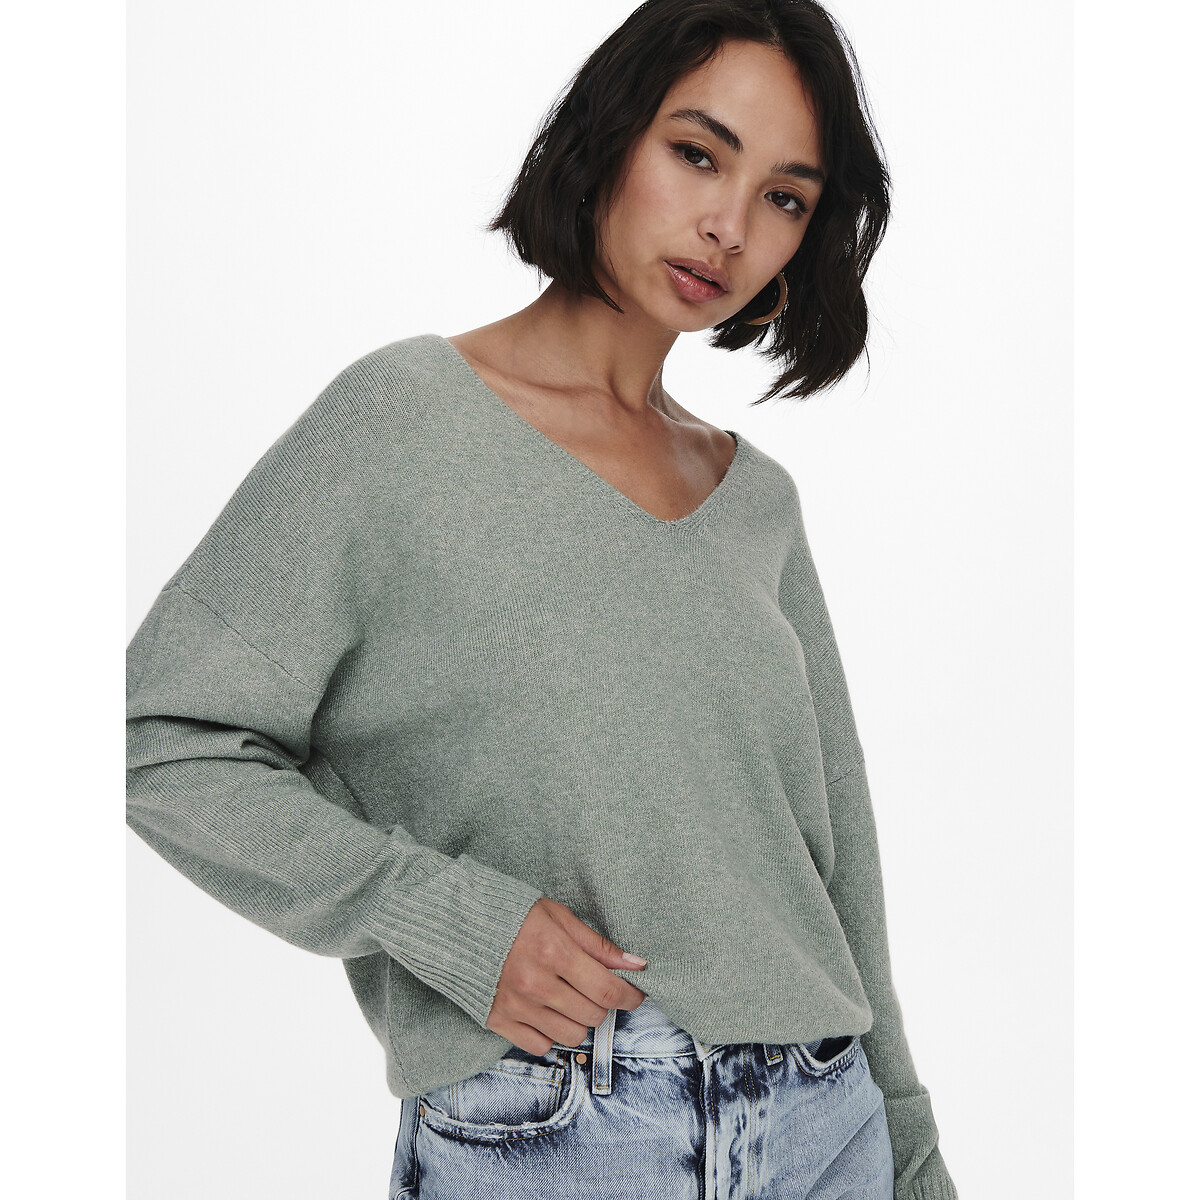 Пуловер ONLY Пуловер С V-образным вырезом из тонкого трикотажа S зеленый, размер S - фото 2